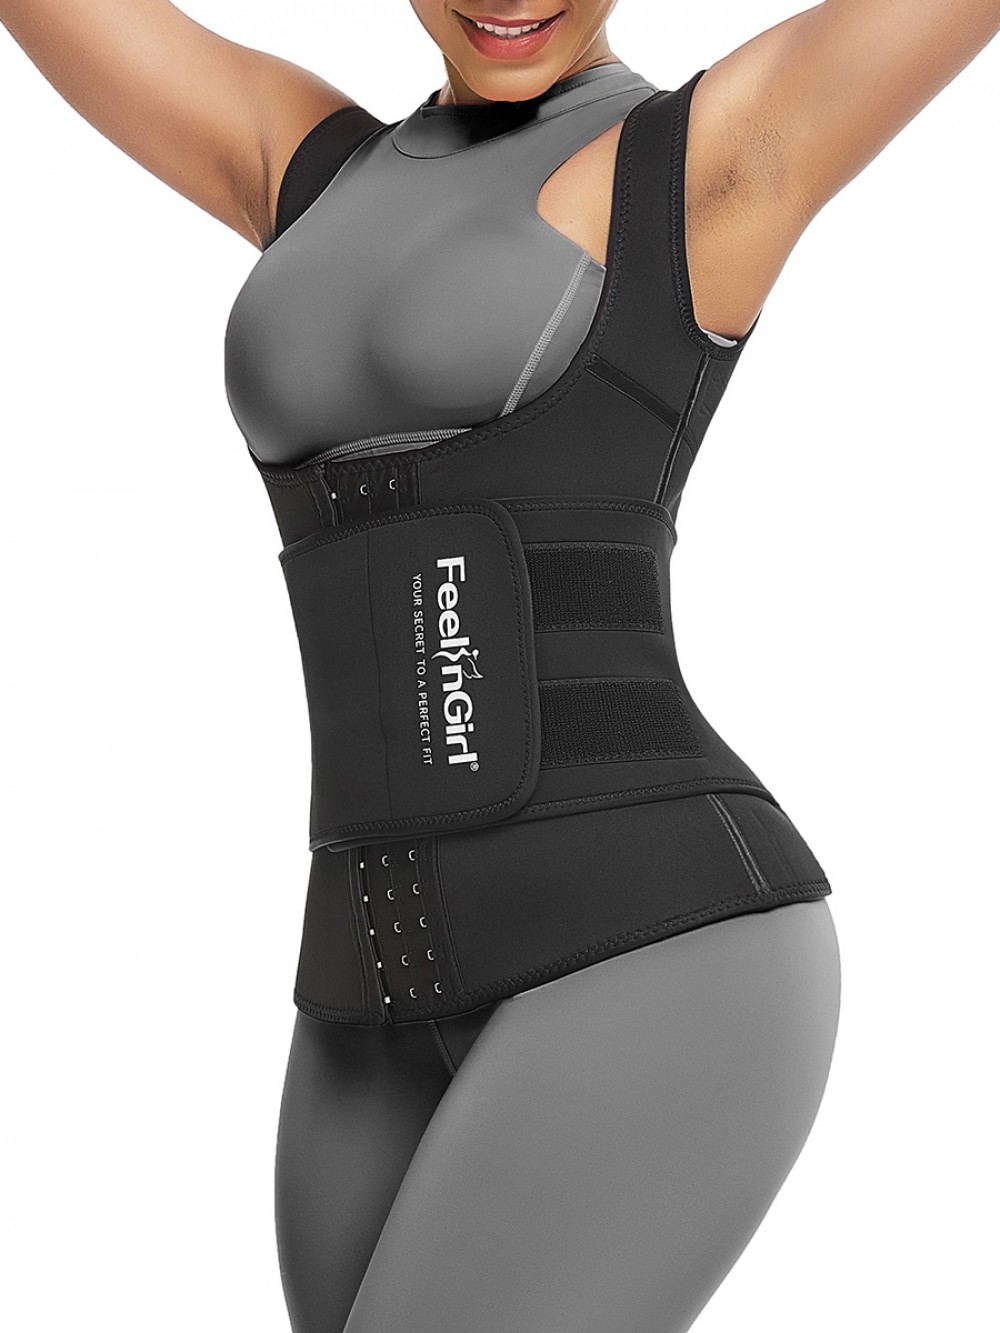 Cellulite Reducing Black Neoprene Waist Trainer Vest With Feelingirl Logo